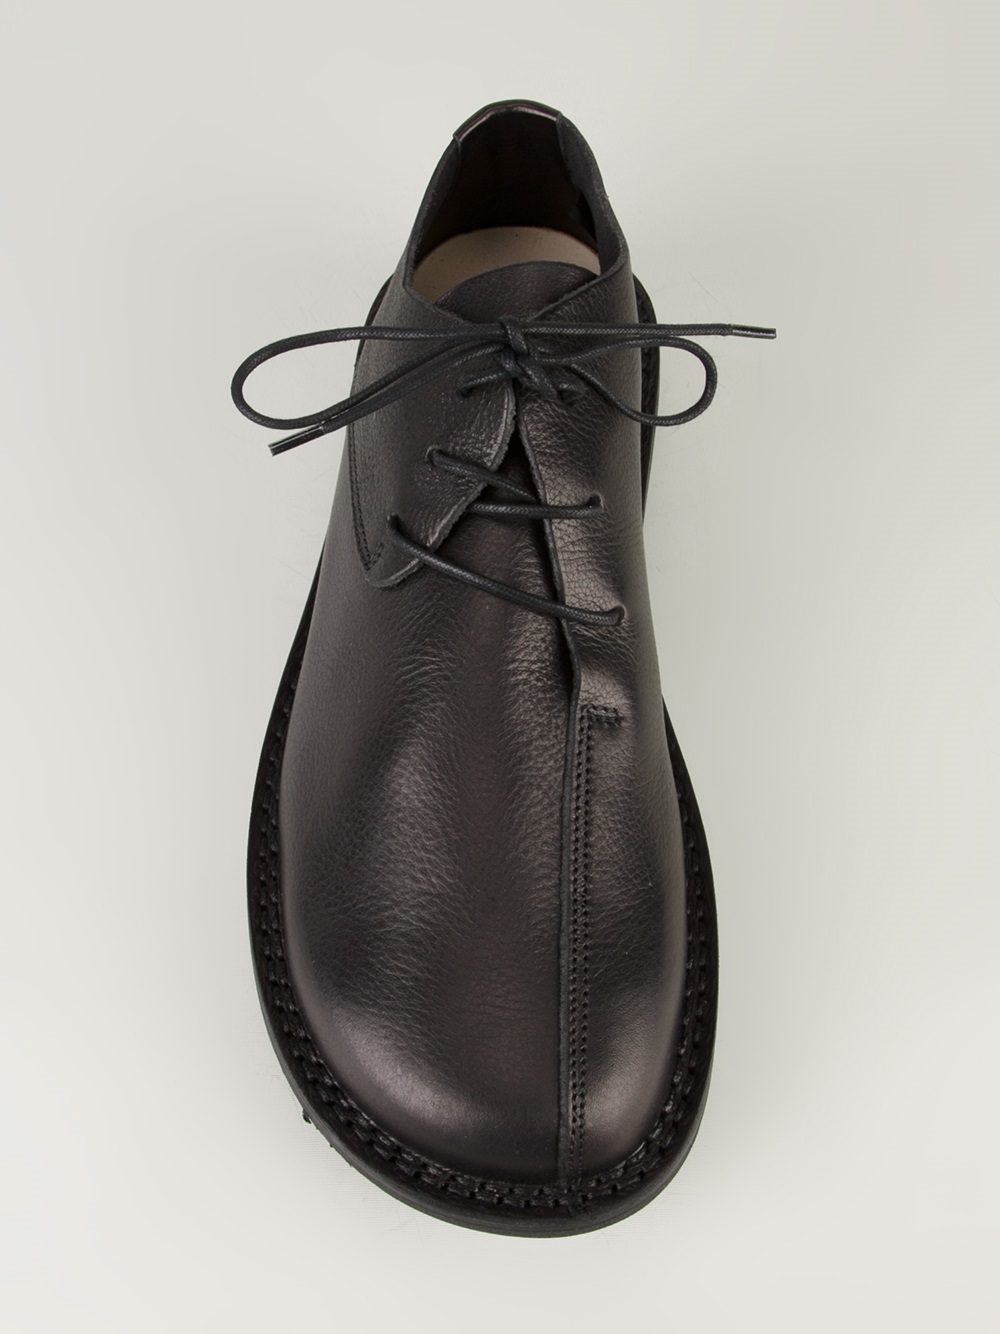 Trippen Trippen Laceup Shoe in Black for Men - Lyst